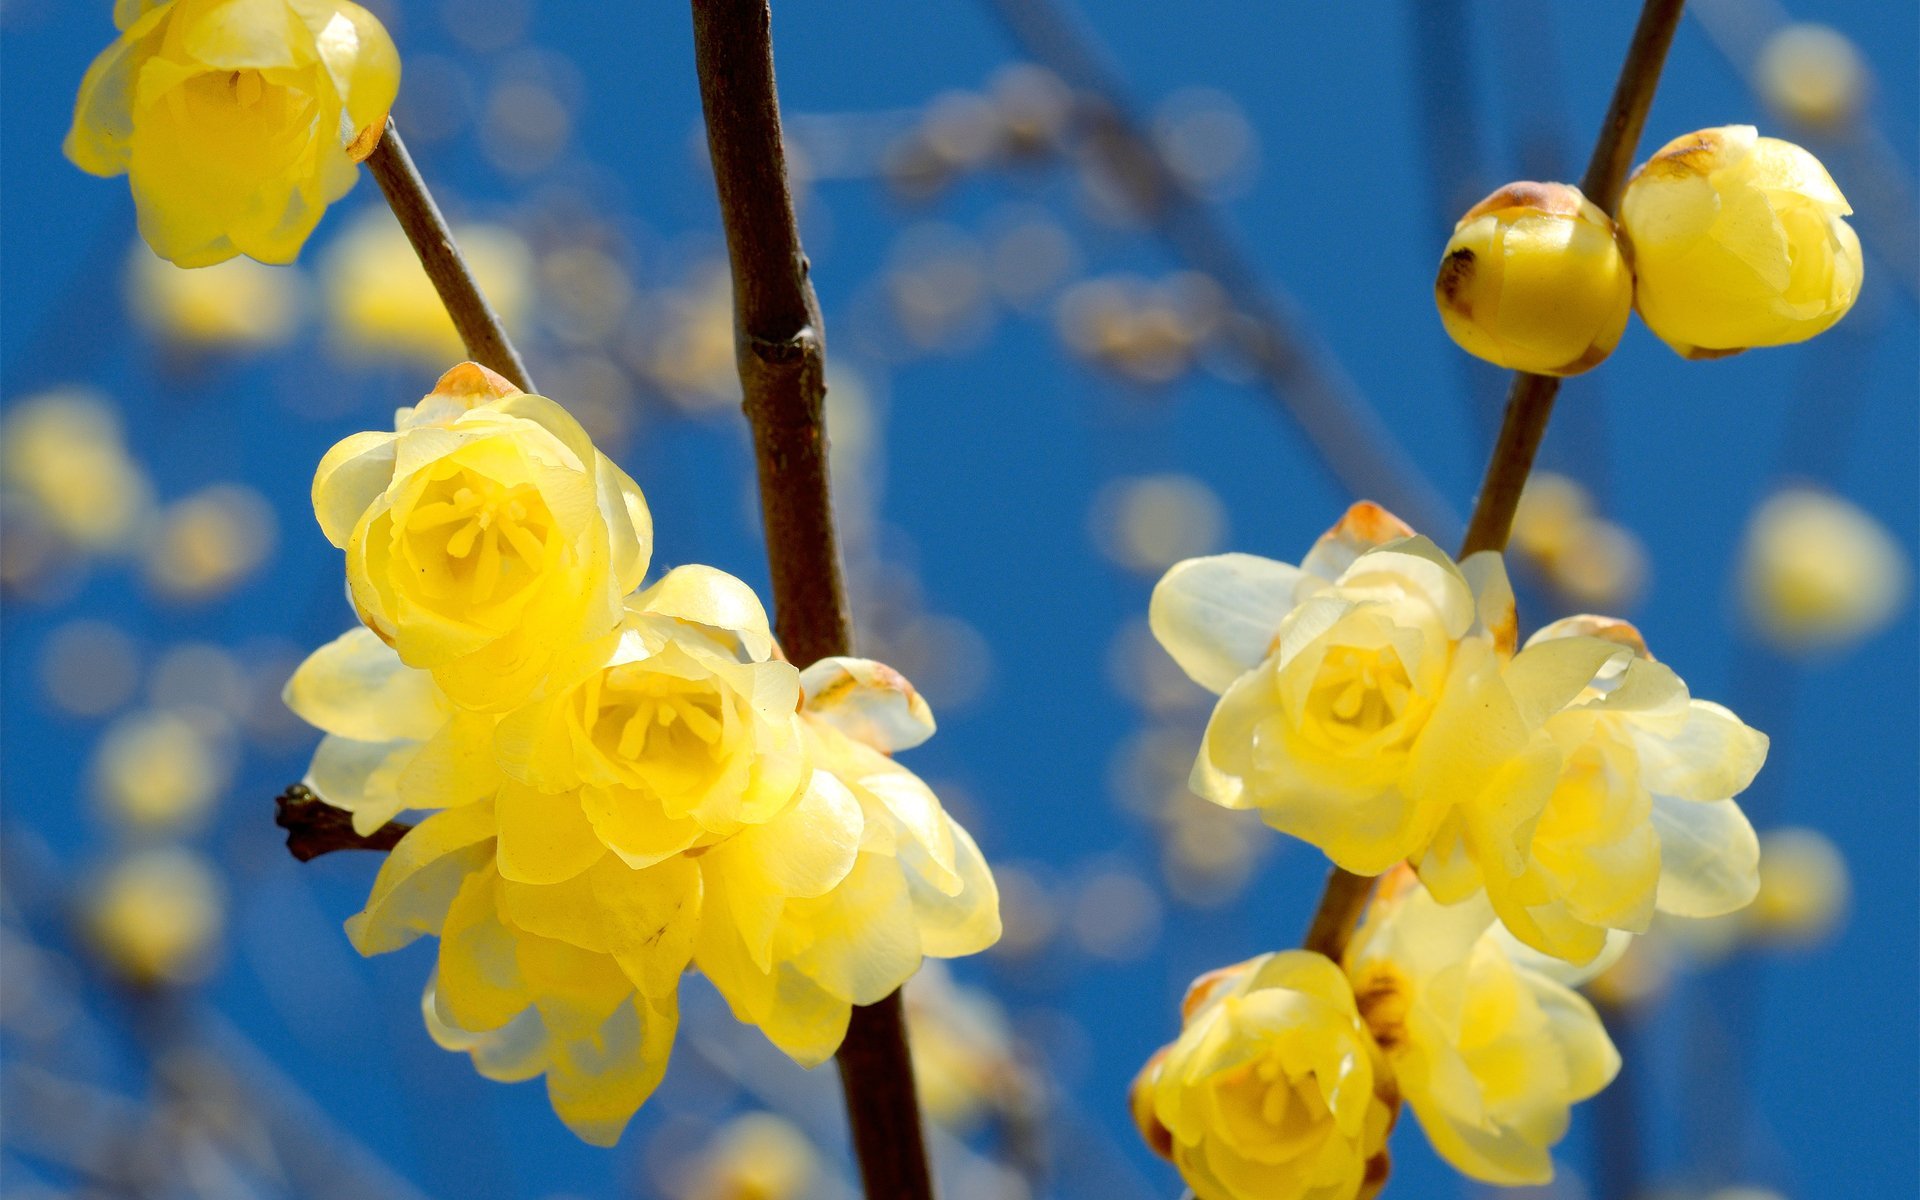 Фото весны красивые на заставку на телефон. Желтый цветок весенний апрельский. Желтые цветочки распускаются весной. Красивые весенние цветы.